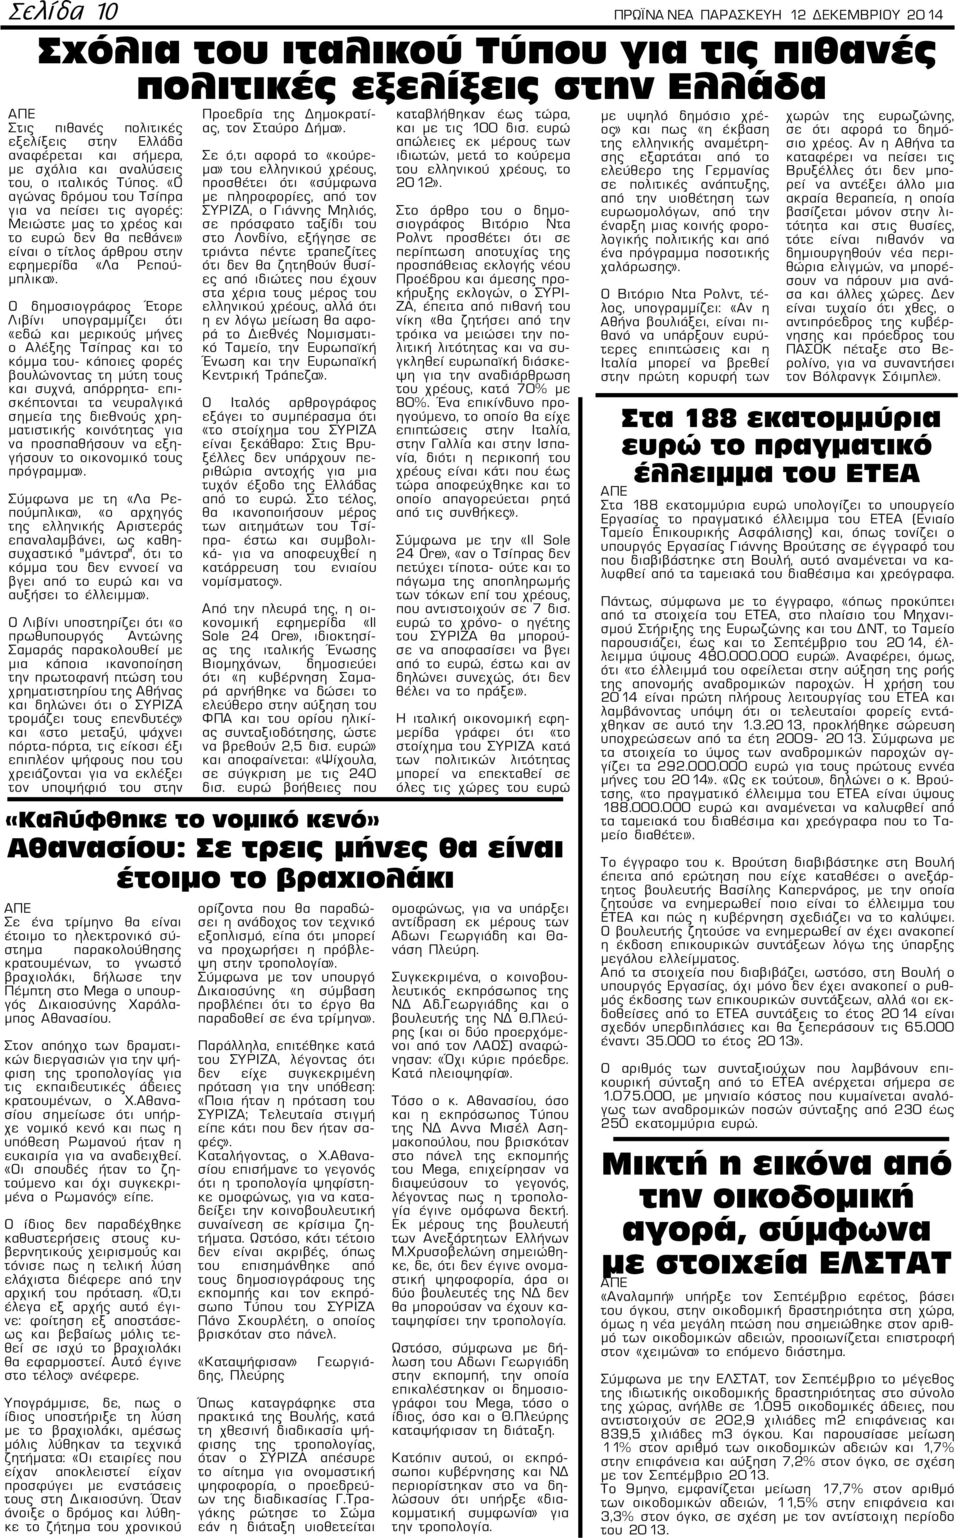 «Ο αγώνας δρόμου του Τσίπρα για να πείσει τις αγορές: Μειώστε μας το χρέος και το ευρώ δεν θα πεθάνει» είναι ο τίτλος άρθρου στην εφημερίδα «Λα Ρεπούμπλικα».